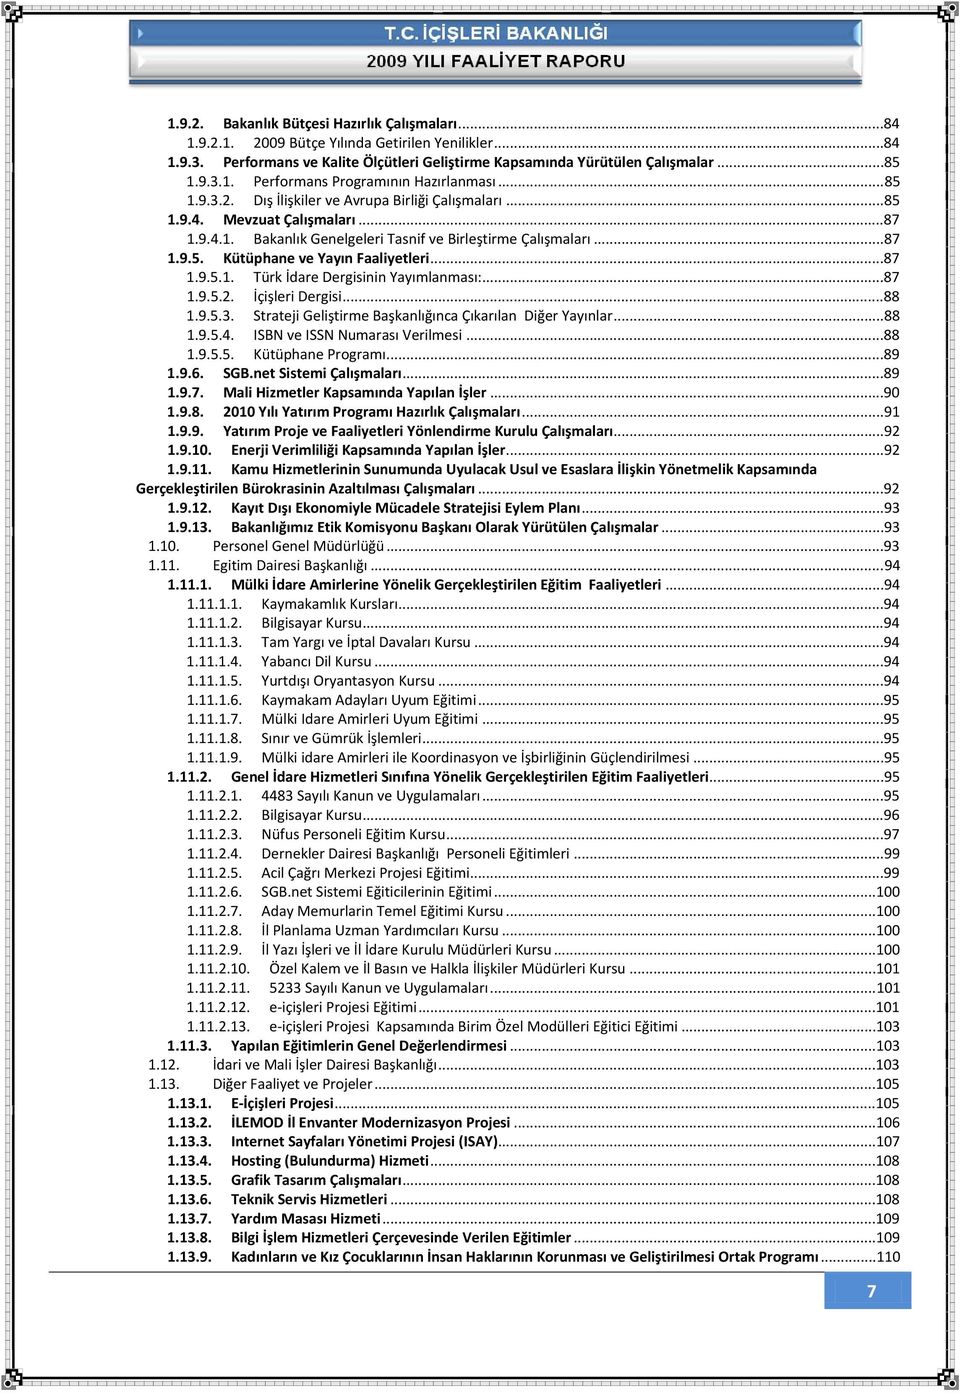 ..87 1.9.5.1. Türk İdare Dergisinin Yayımlanması:...87 1.9.5.2. İçişleri Dergisi...88 1.9.5.3. Strateji Geliştirme Başkanlığınca Çıkarılan Diğer Yayınlar...88 1.9.5.4. ISBN ve ISSN Numarası Verilmesi.